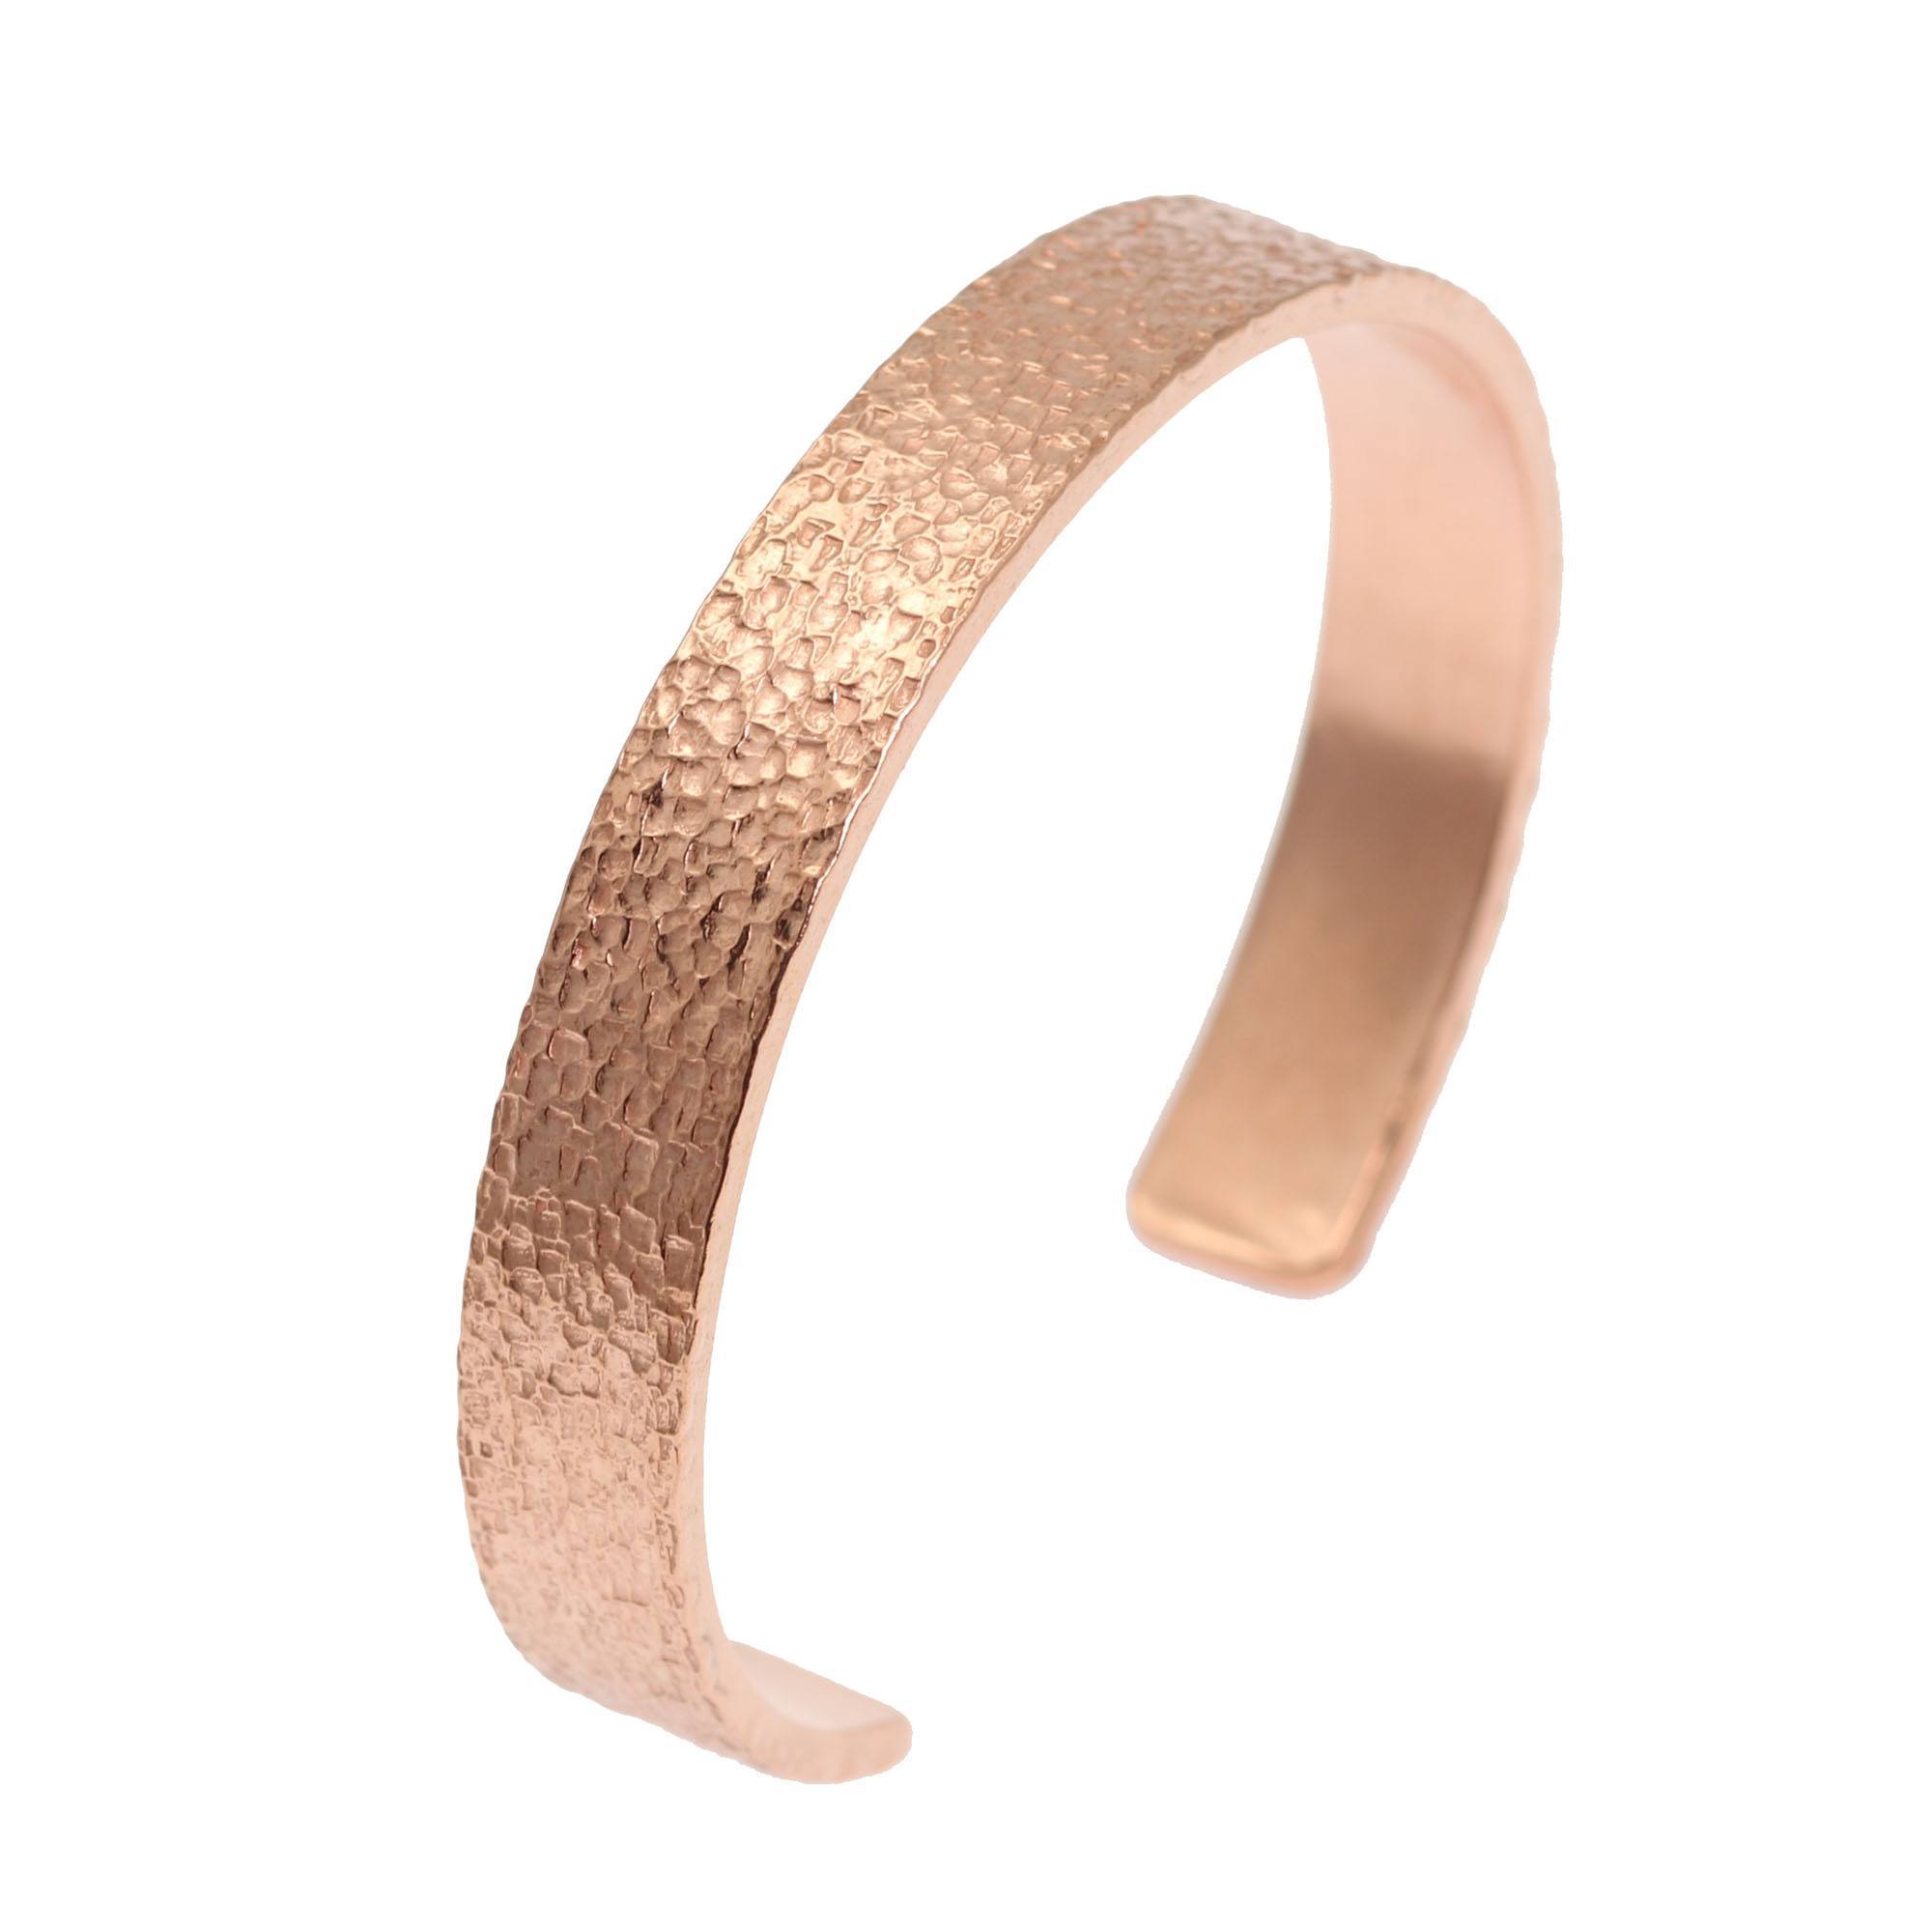 10mm Wide Texturized Copper Cuff Bracelet Solid Copper Cuff